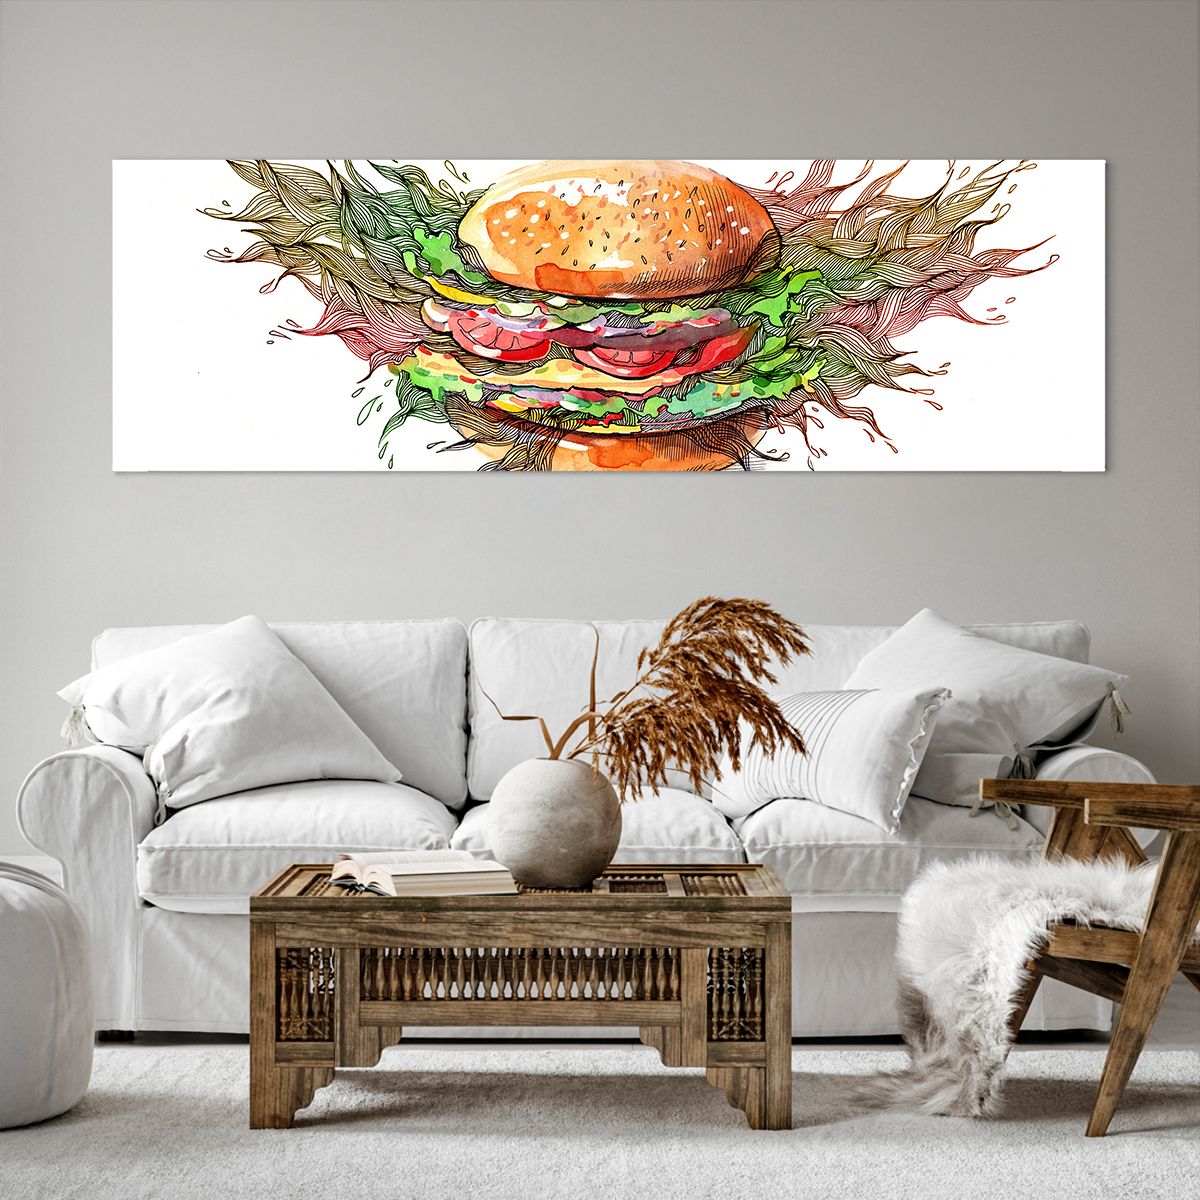 Obrazy na płótnie Gastronomia, Obrazy na płótnie Hamburger, Obrazy na płótnie Kulinaria, Obrazy na płótnie Kuchnia, Obrazy na płótnie Fast Food